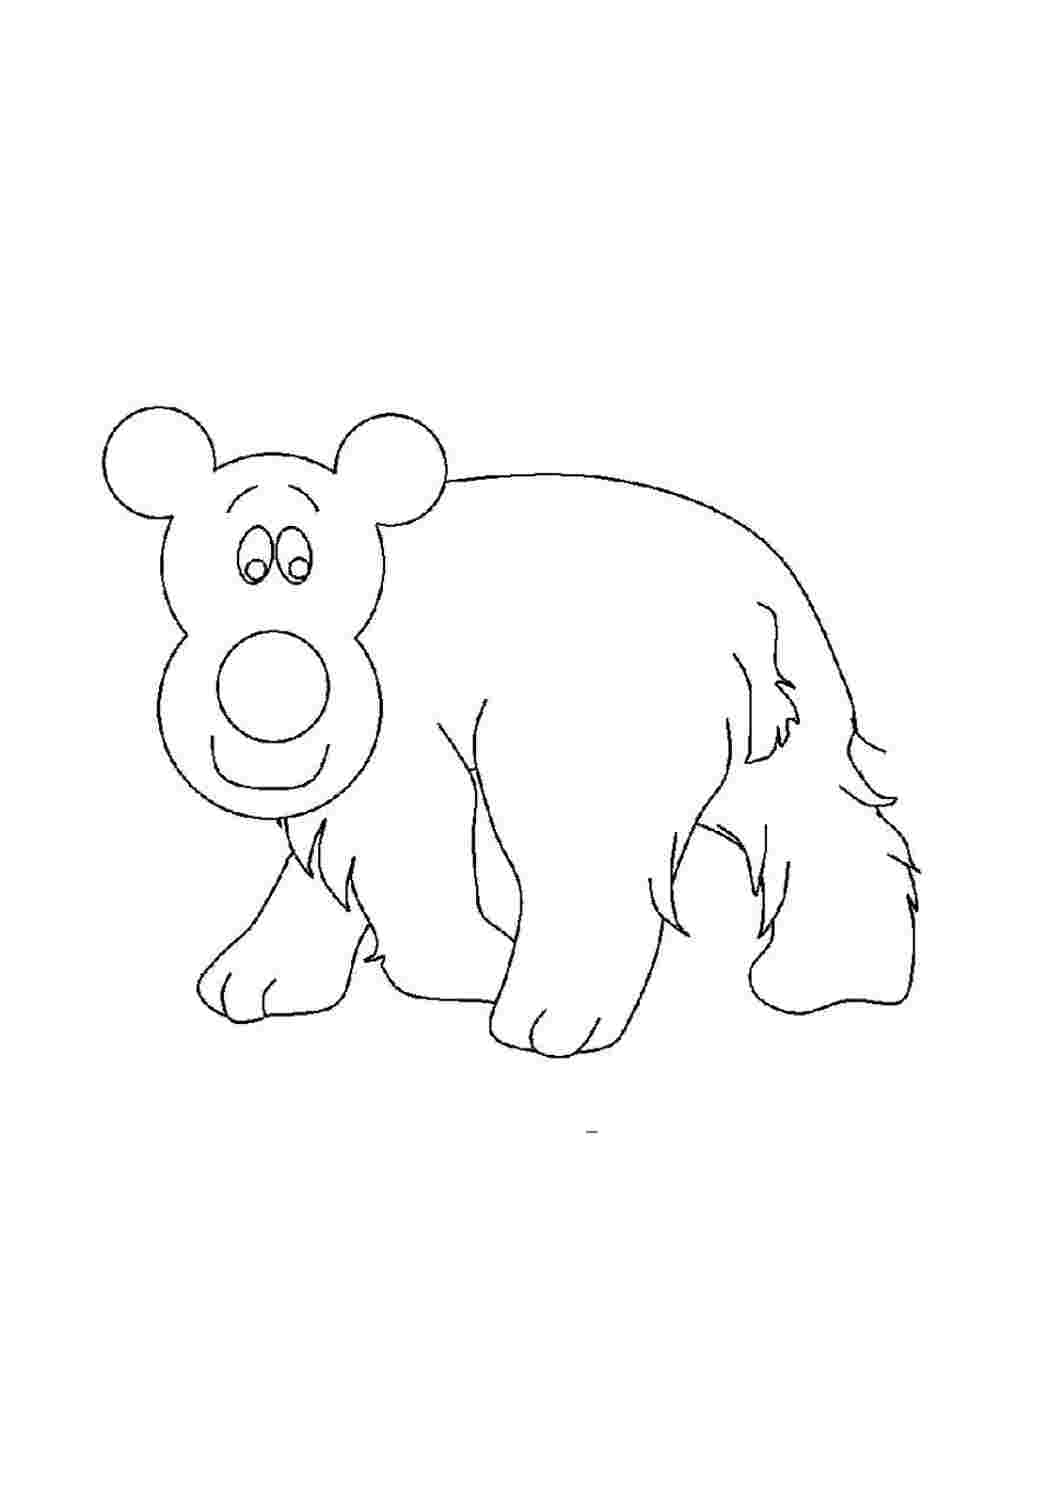 Раскраска медведь для детей 2 3 лет. Медведь раскраска для детей. Белый медведь раскраска для детей. Раскраска медведь для детей 3-4 лет. Рисунок медведя для срисовки.